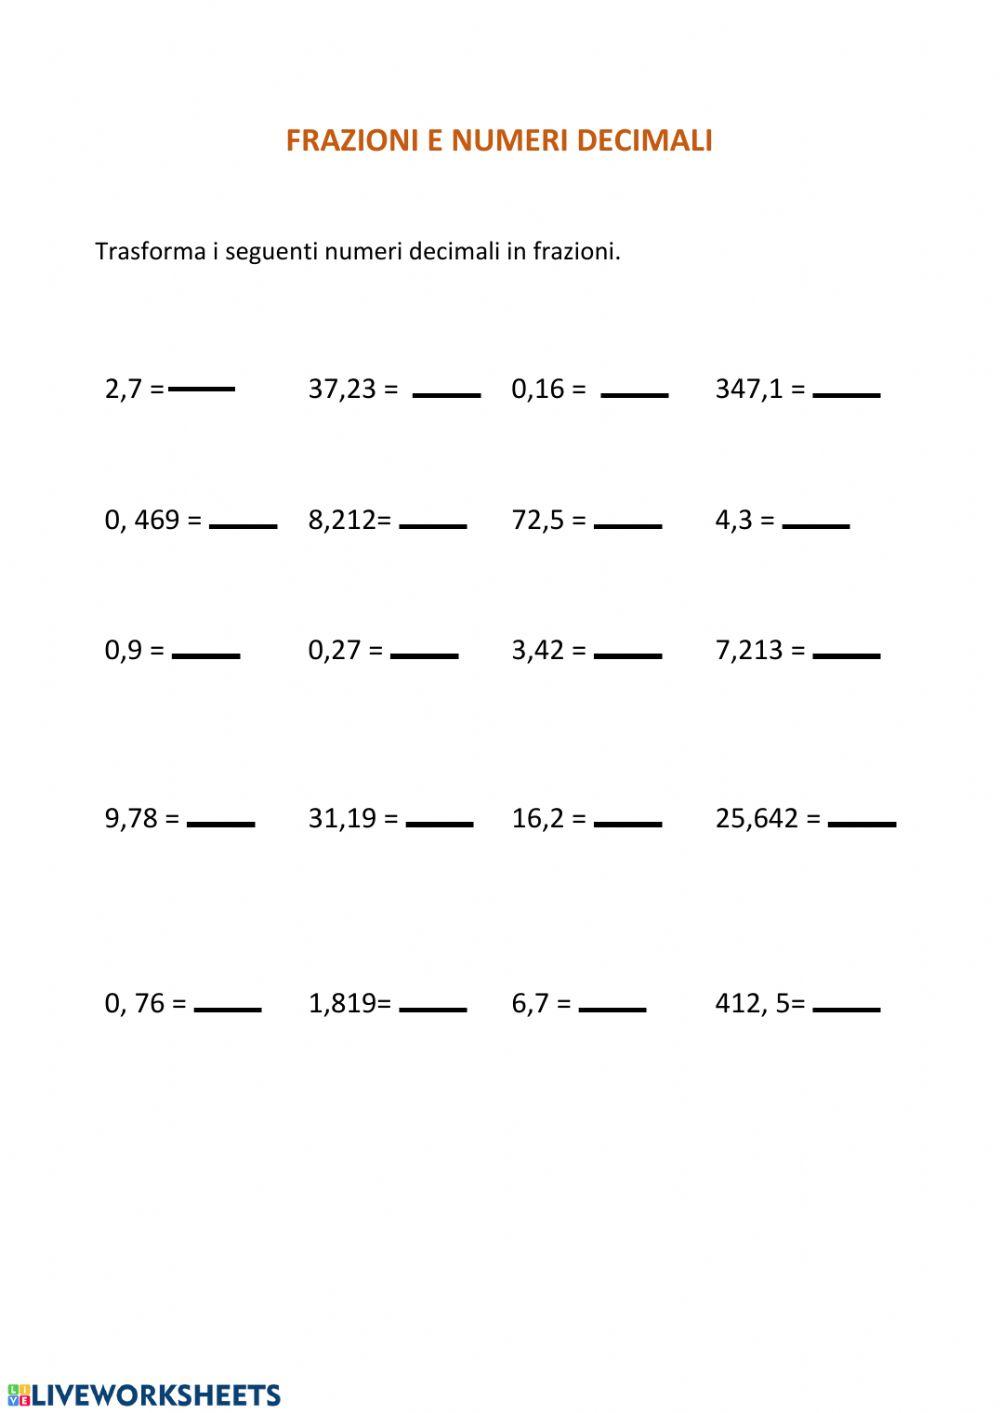 Frazioni e numeri decimali